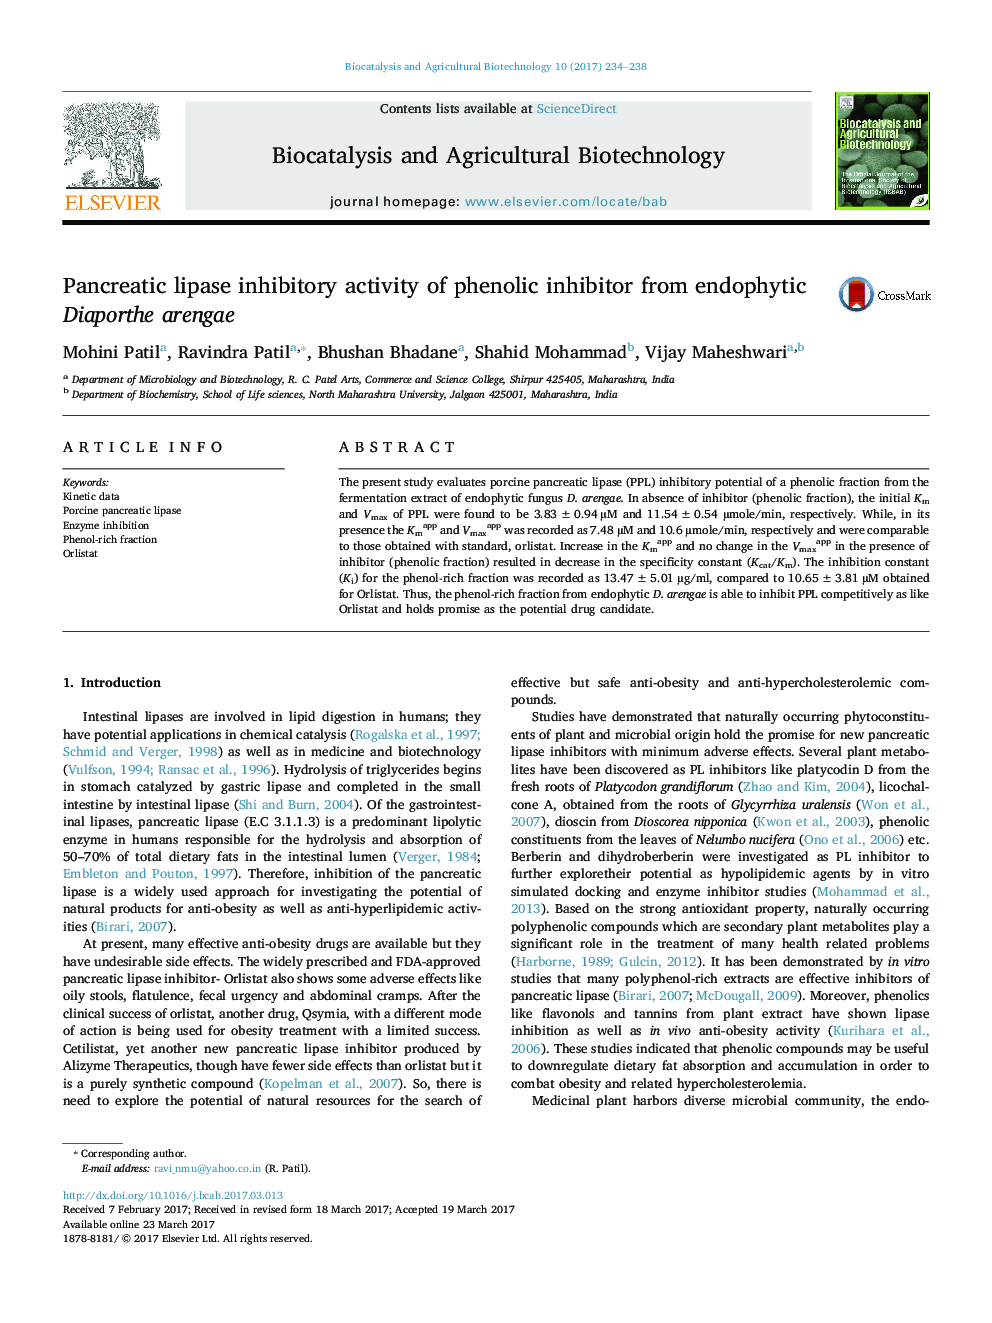 Pancreatic lipase inhibitory activity of phenolic inhibitor from endophytic Diaporthe arengae